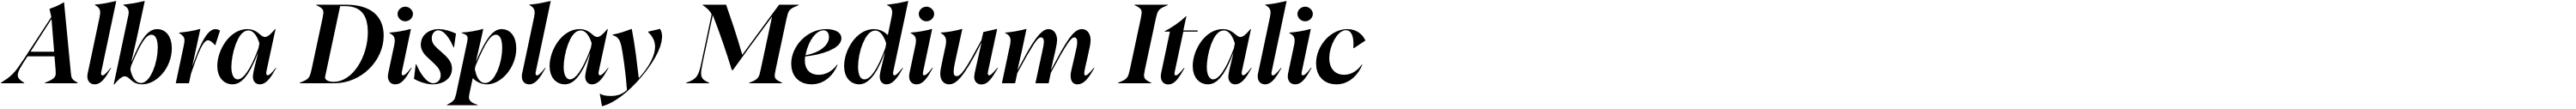 Albra Display Medium Italic